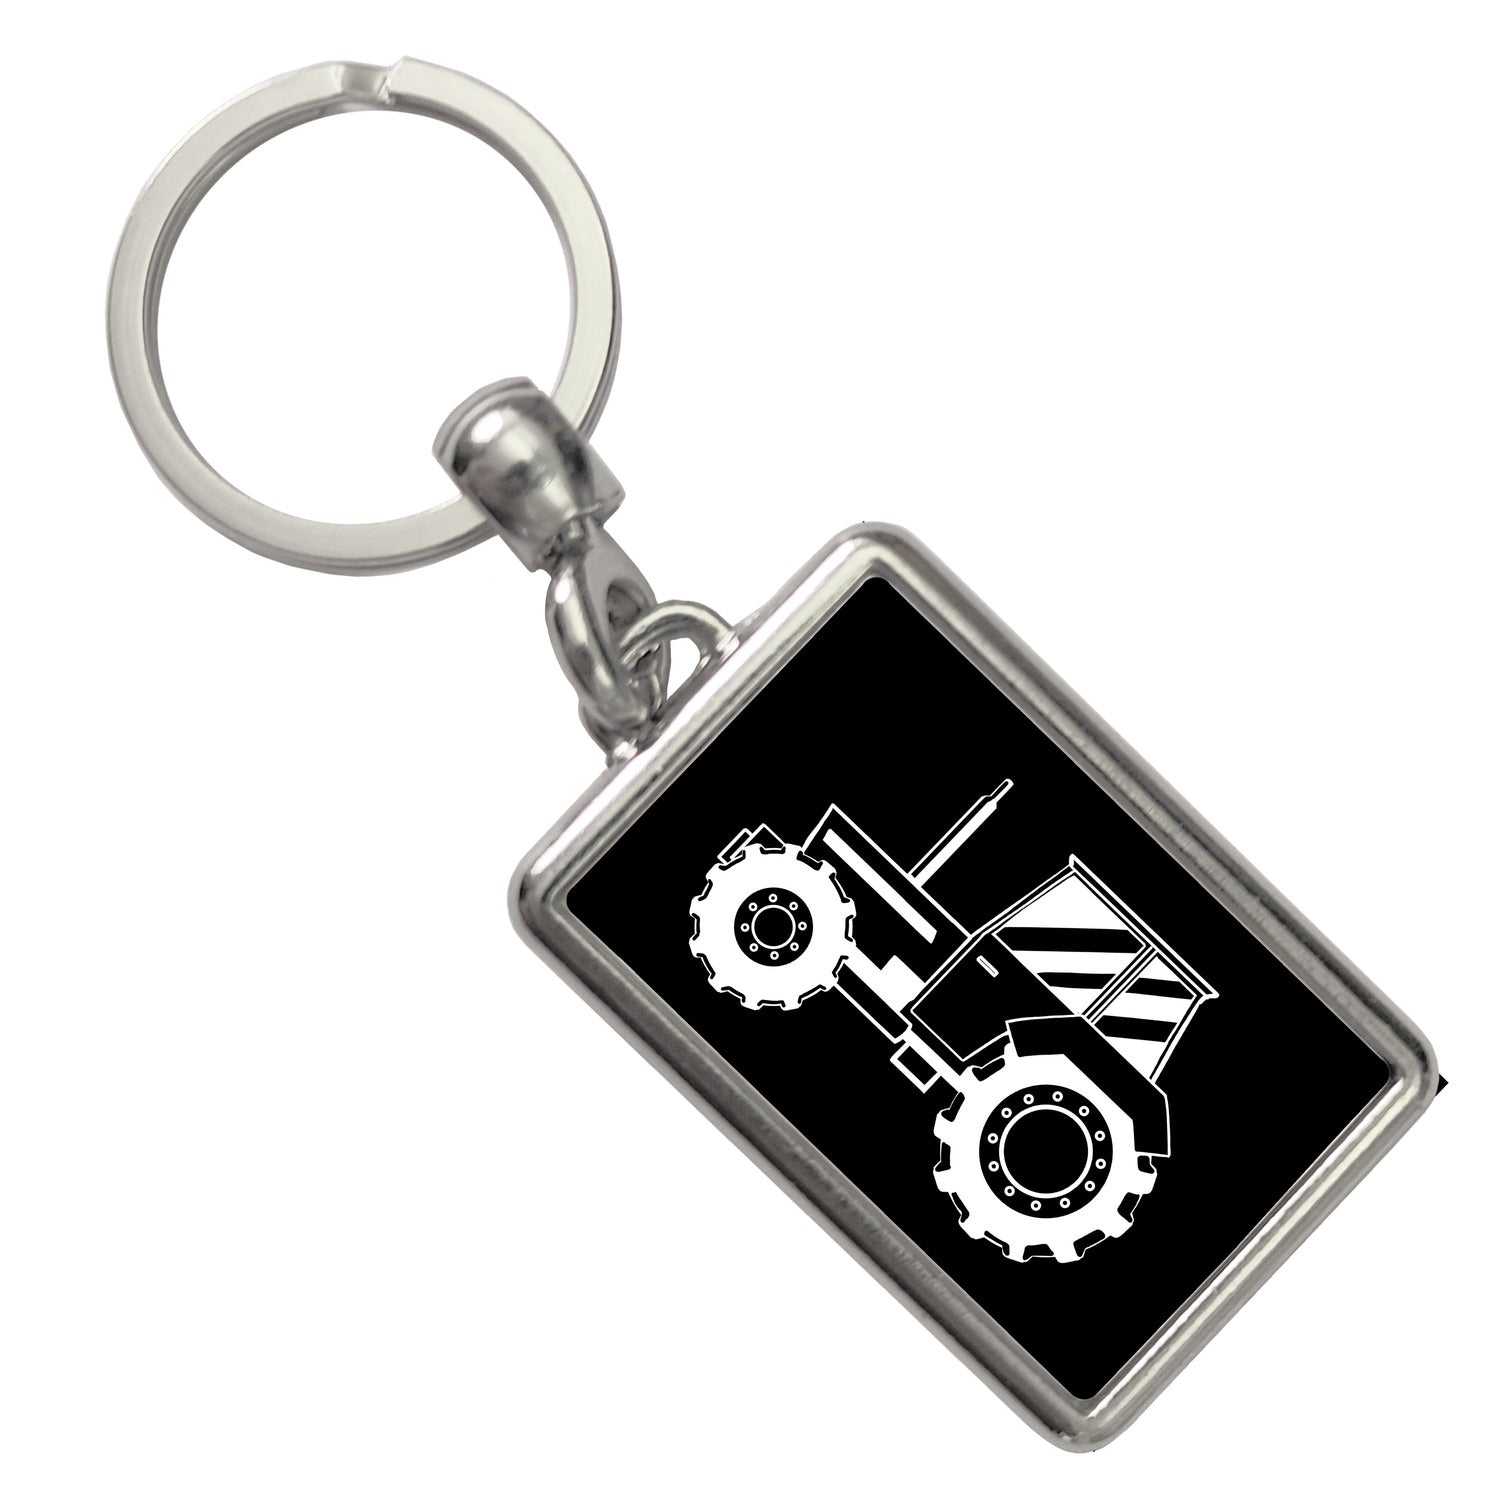 Traktor Schlüsselanhänger: Einzigartig und Individuell